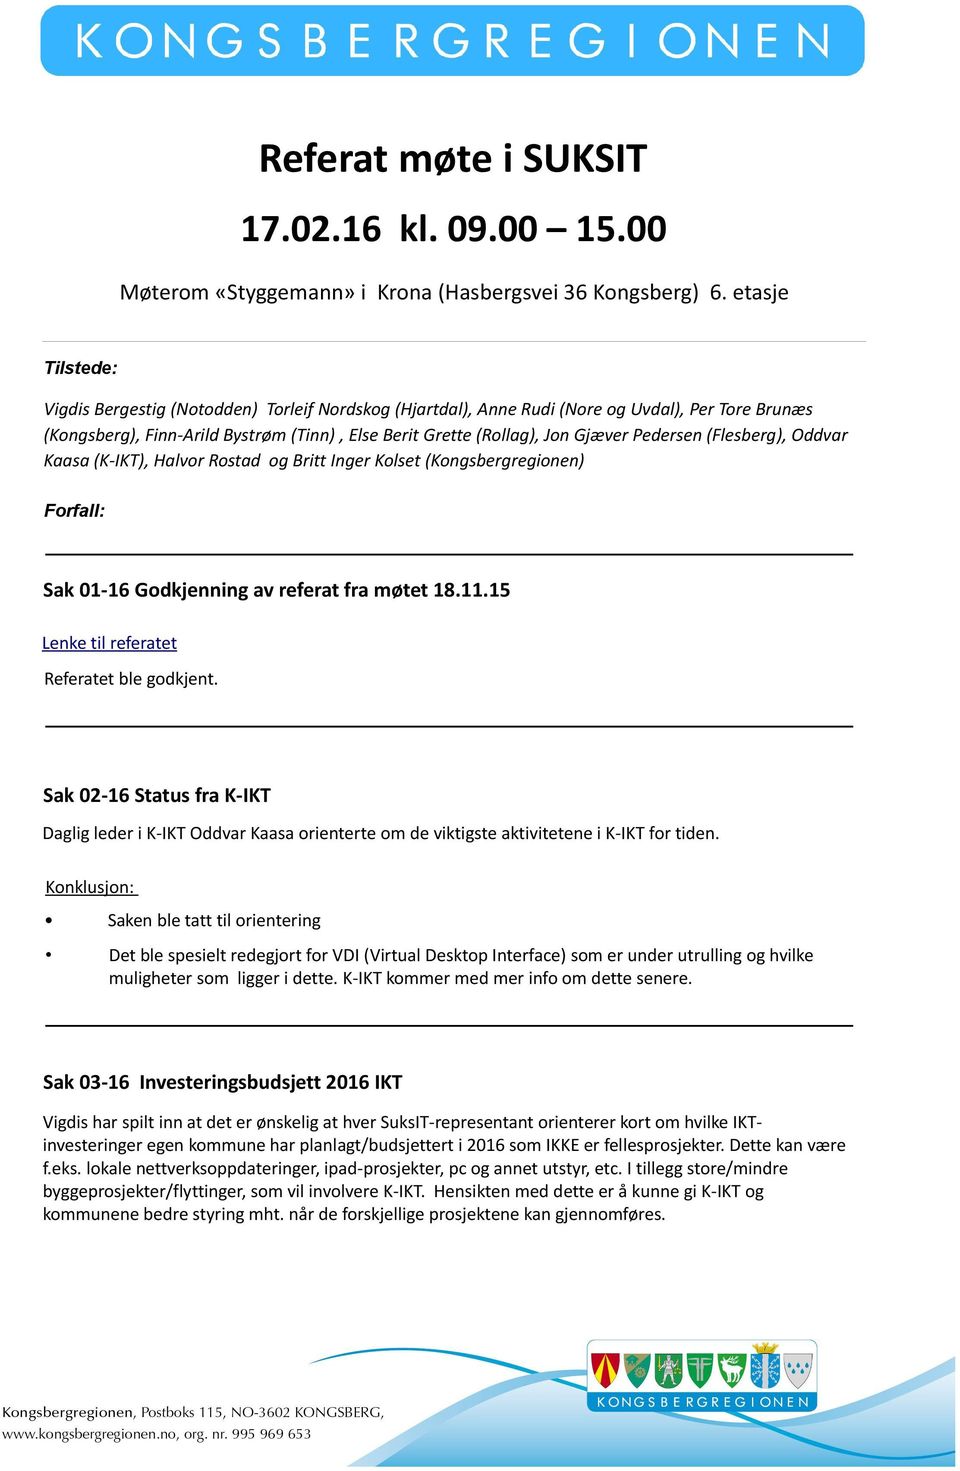 Pedersen (Flesberg), Oddvar Kaasa (K-IKT), Halvor Rostad og Britt Inger Kolset (Kongsbergregionen) Forfall: Sak 01-16 Godkjenning av referat fra møtet 18.11.